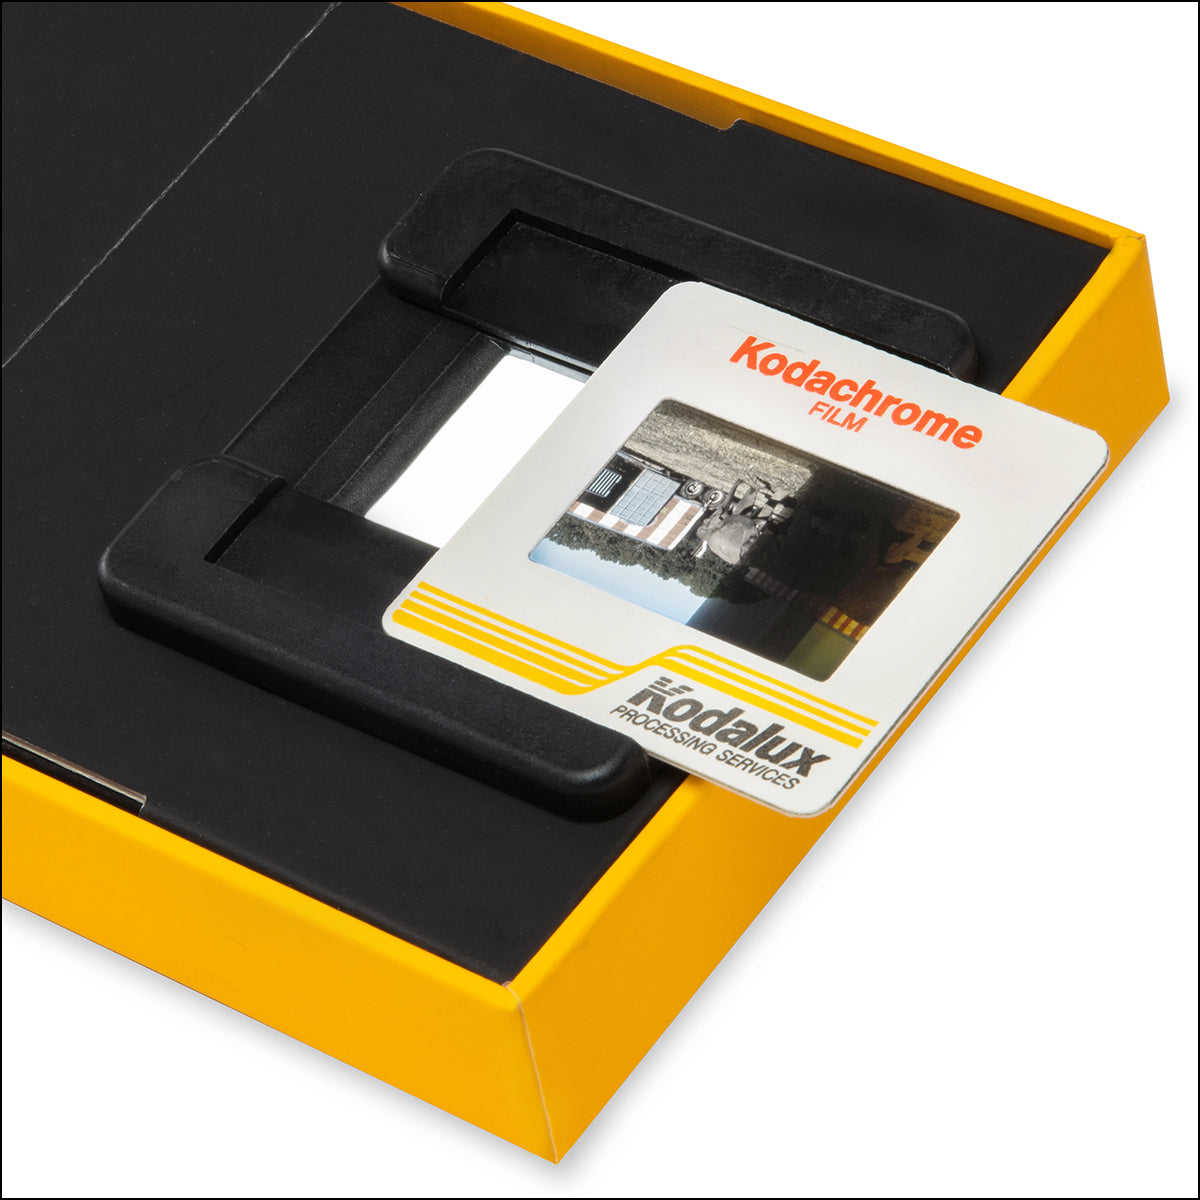 Kodak Mobile Film Scanner - 20267963